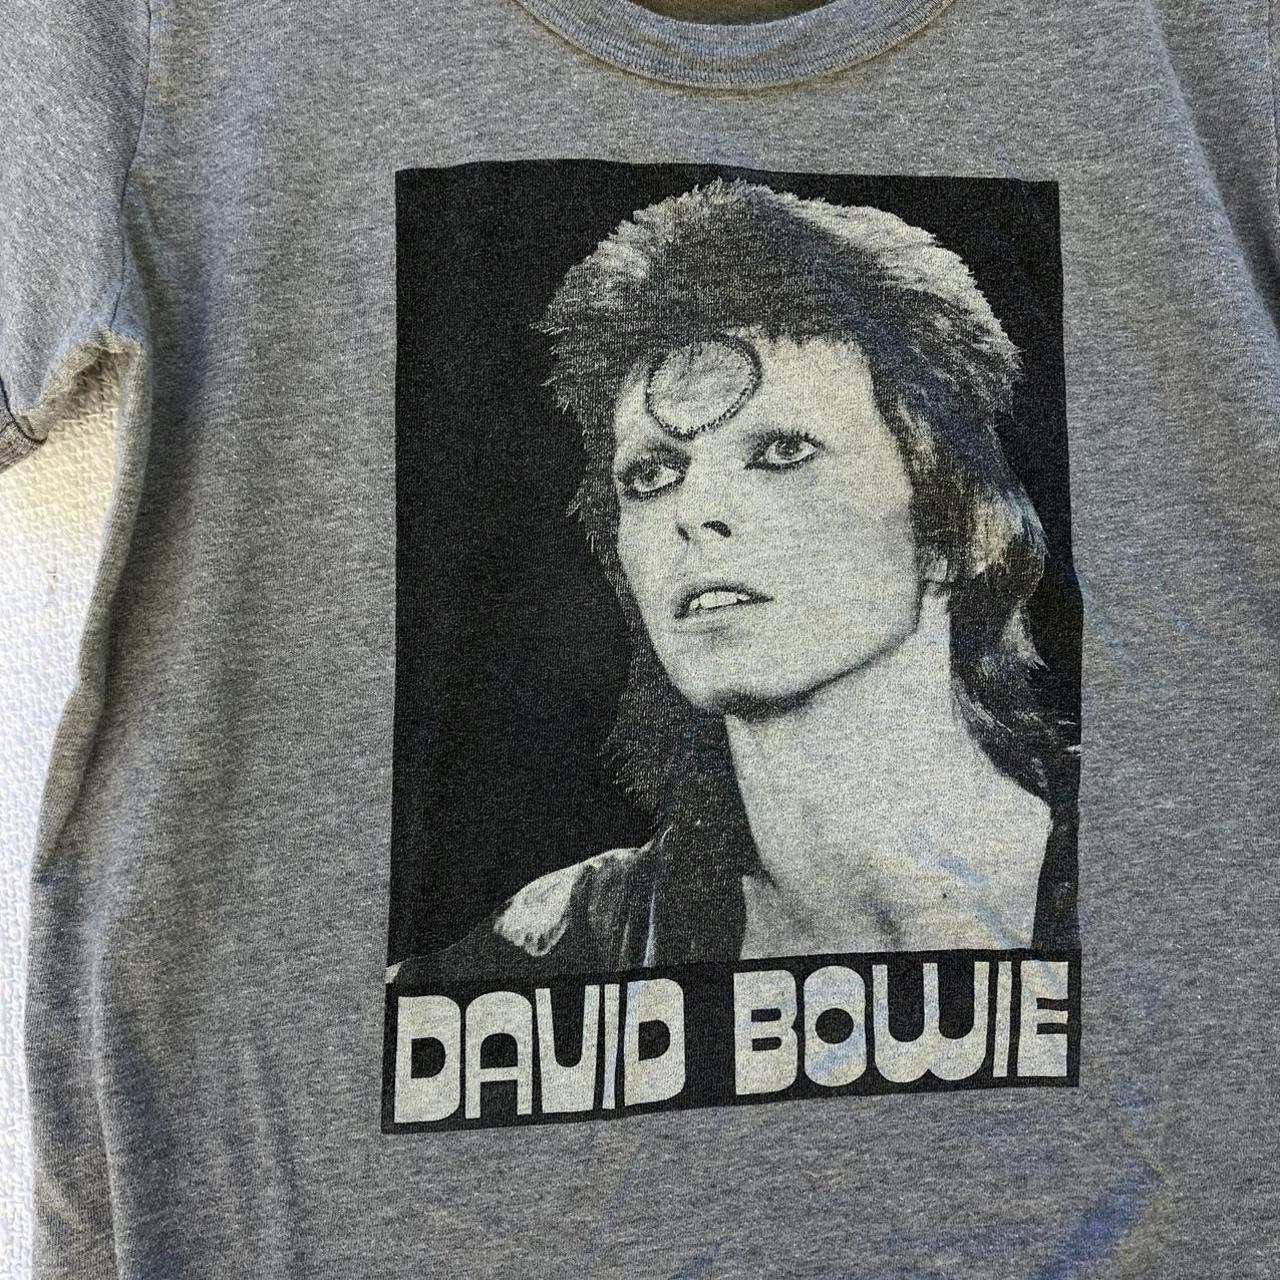 Product Image 3 - Vintage David Bowie T shirt

It’s